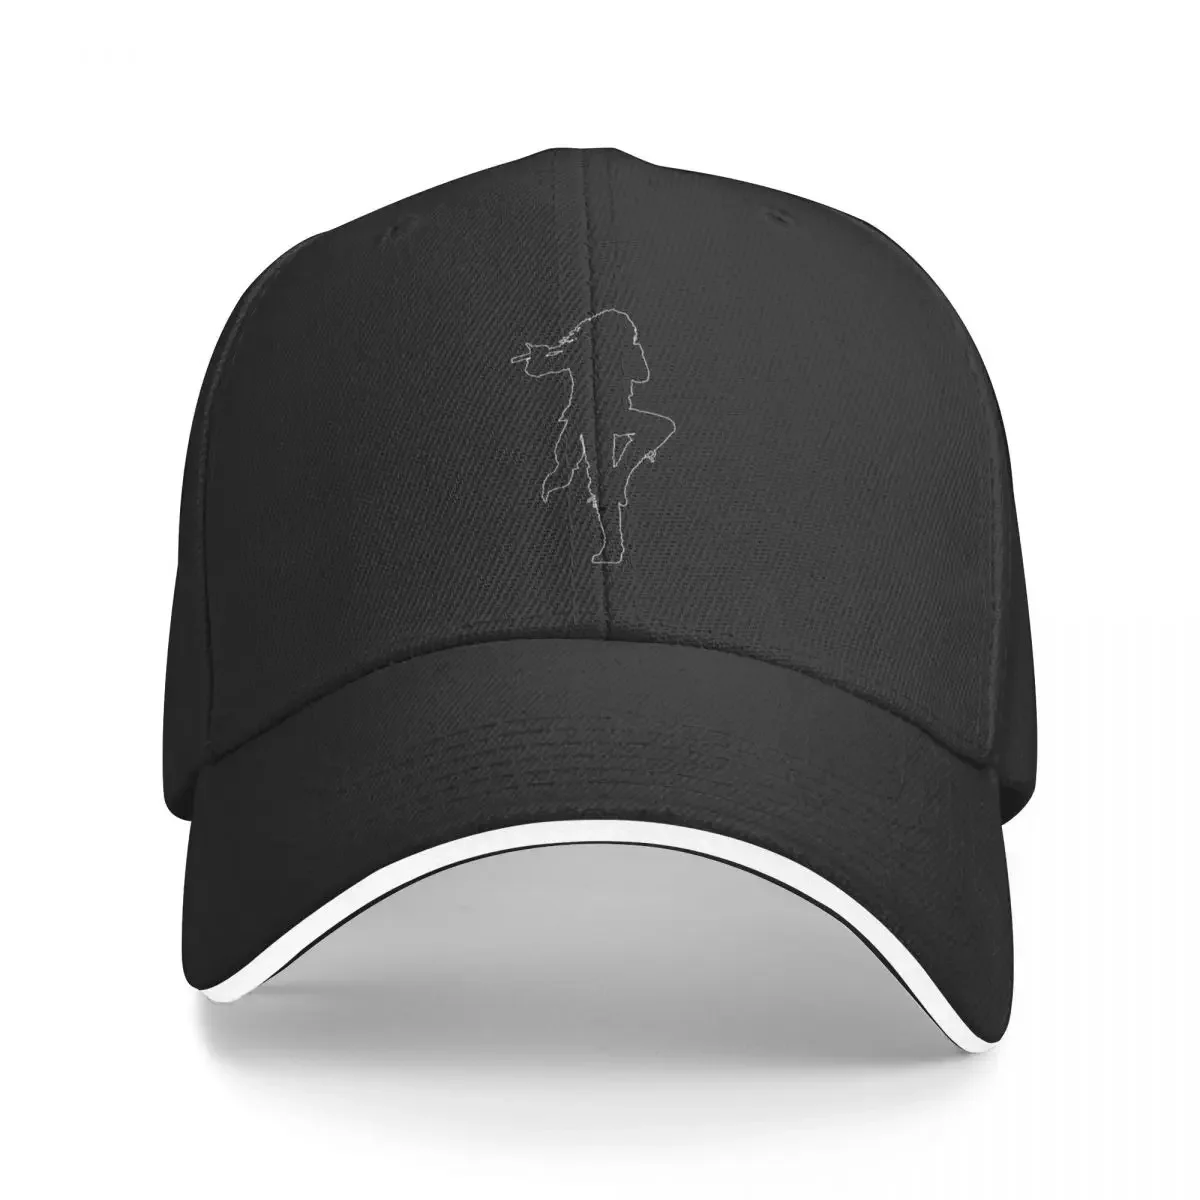 

Jethro Tull Silhouette Classic T-Shirt Baseball Cap Rave Wild Ball Hat Sunhat Baseball For Men Women's